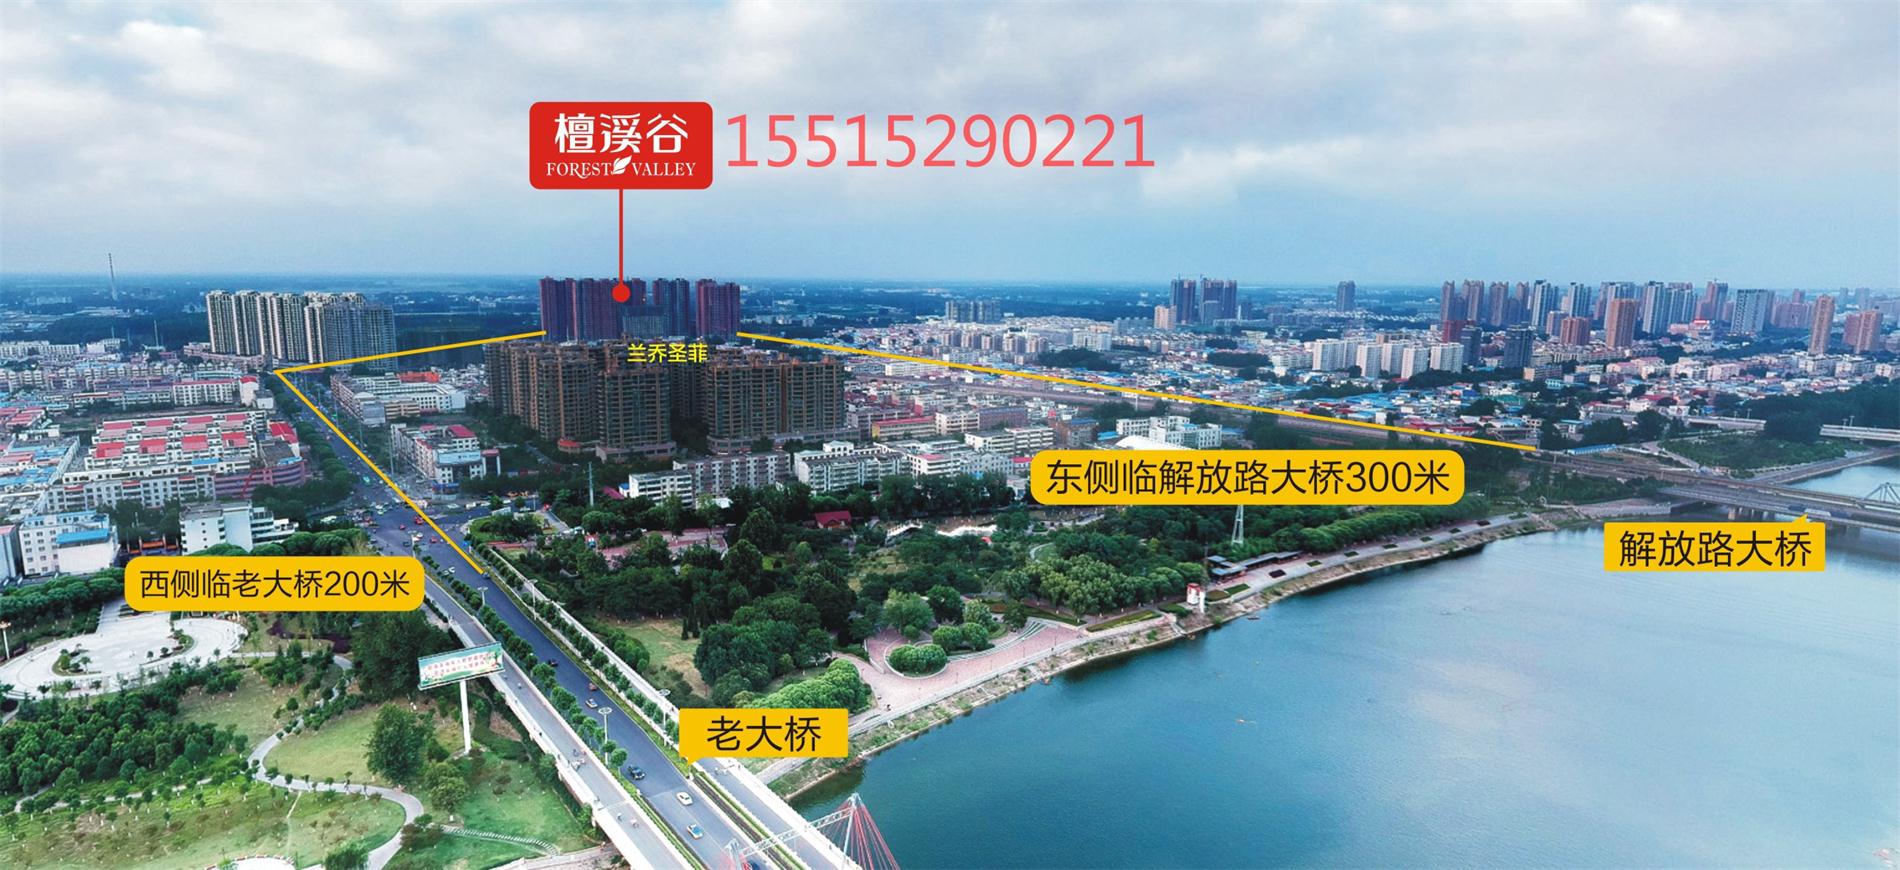 漯河檀溪谷:买房子的三大流程 - 房产建筑